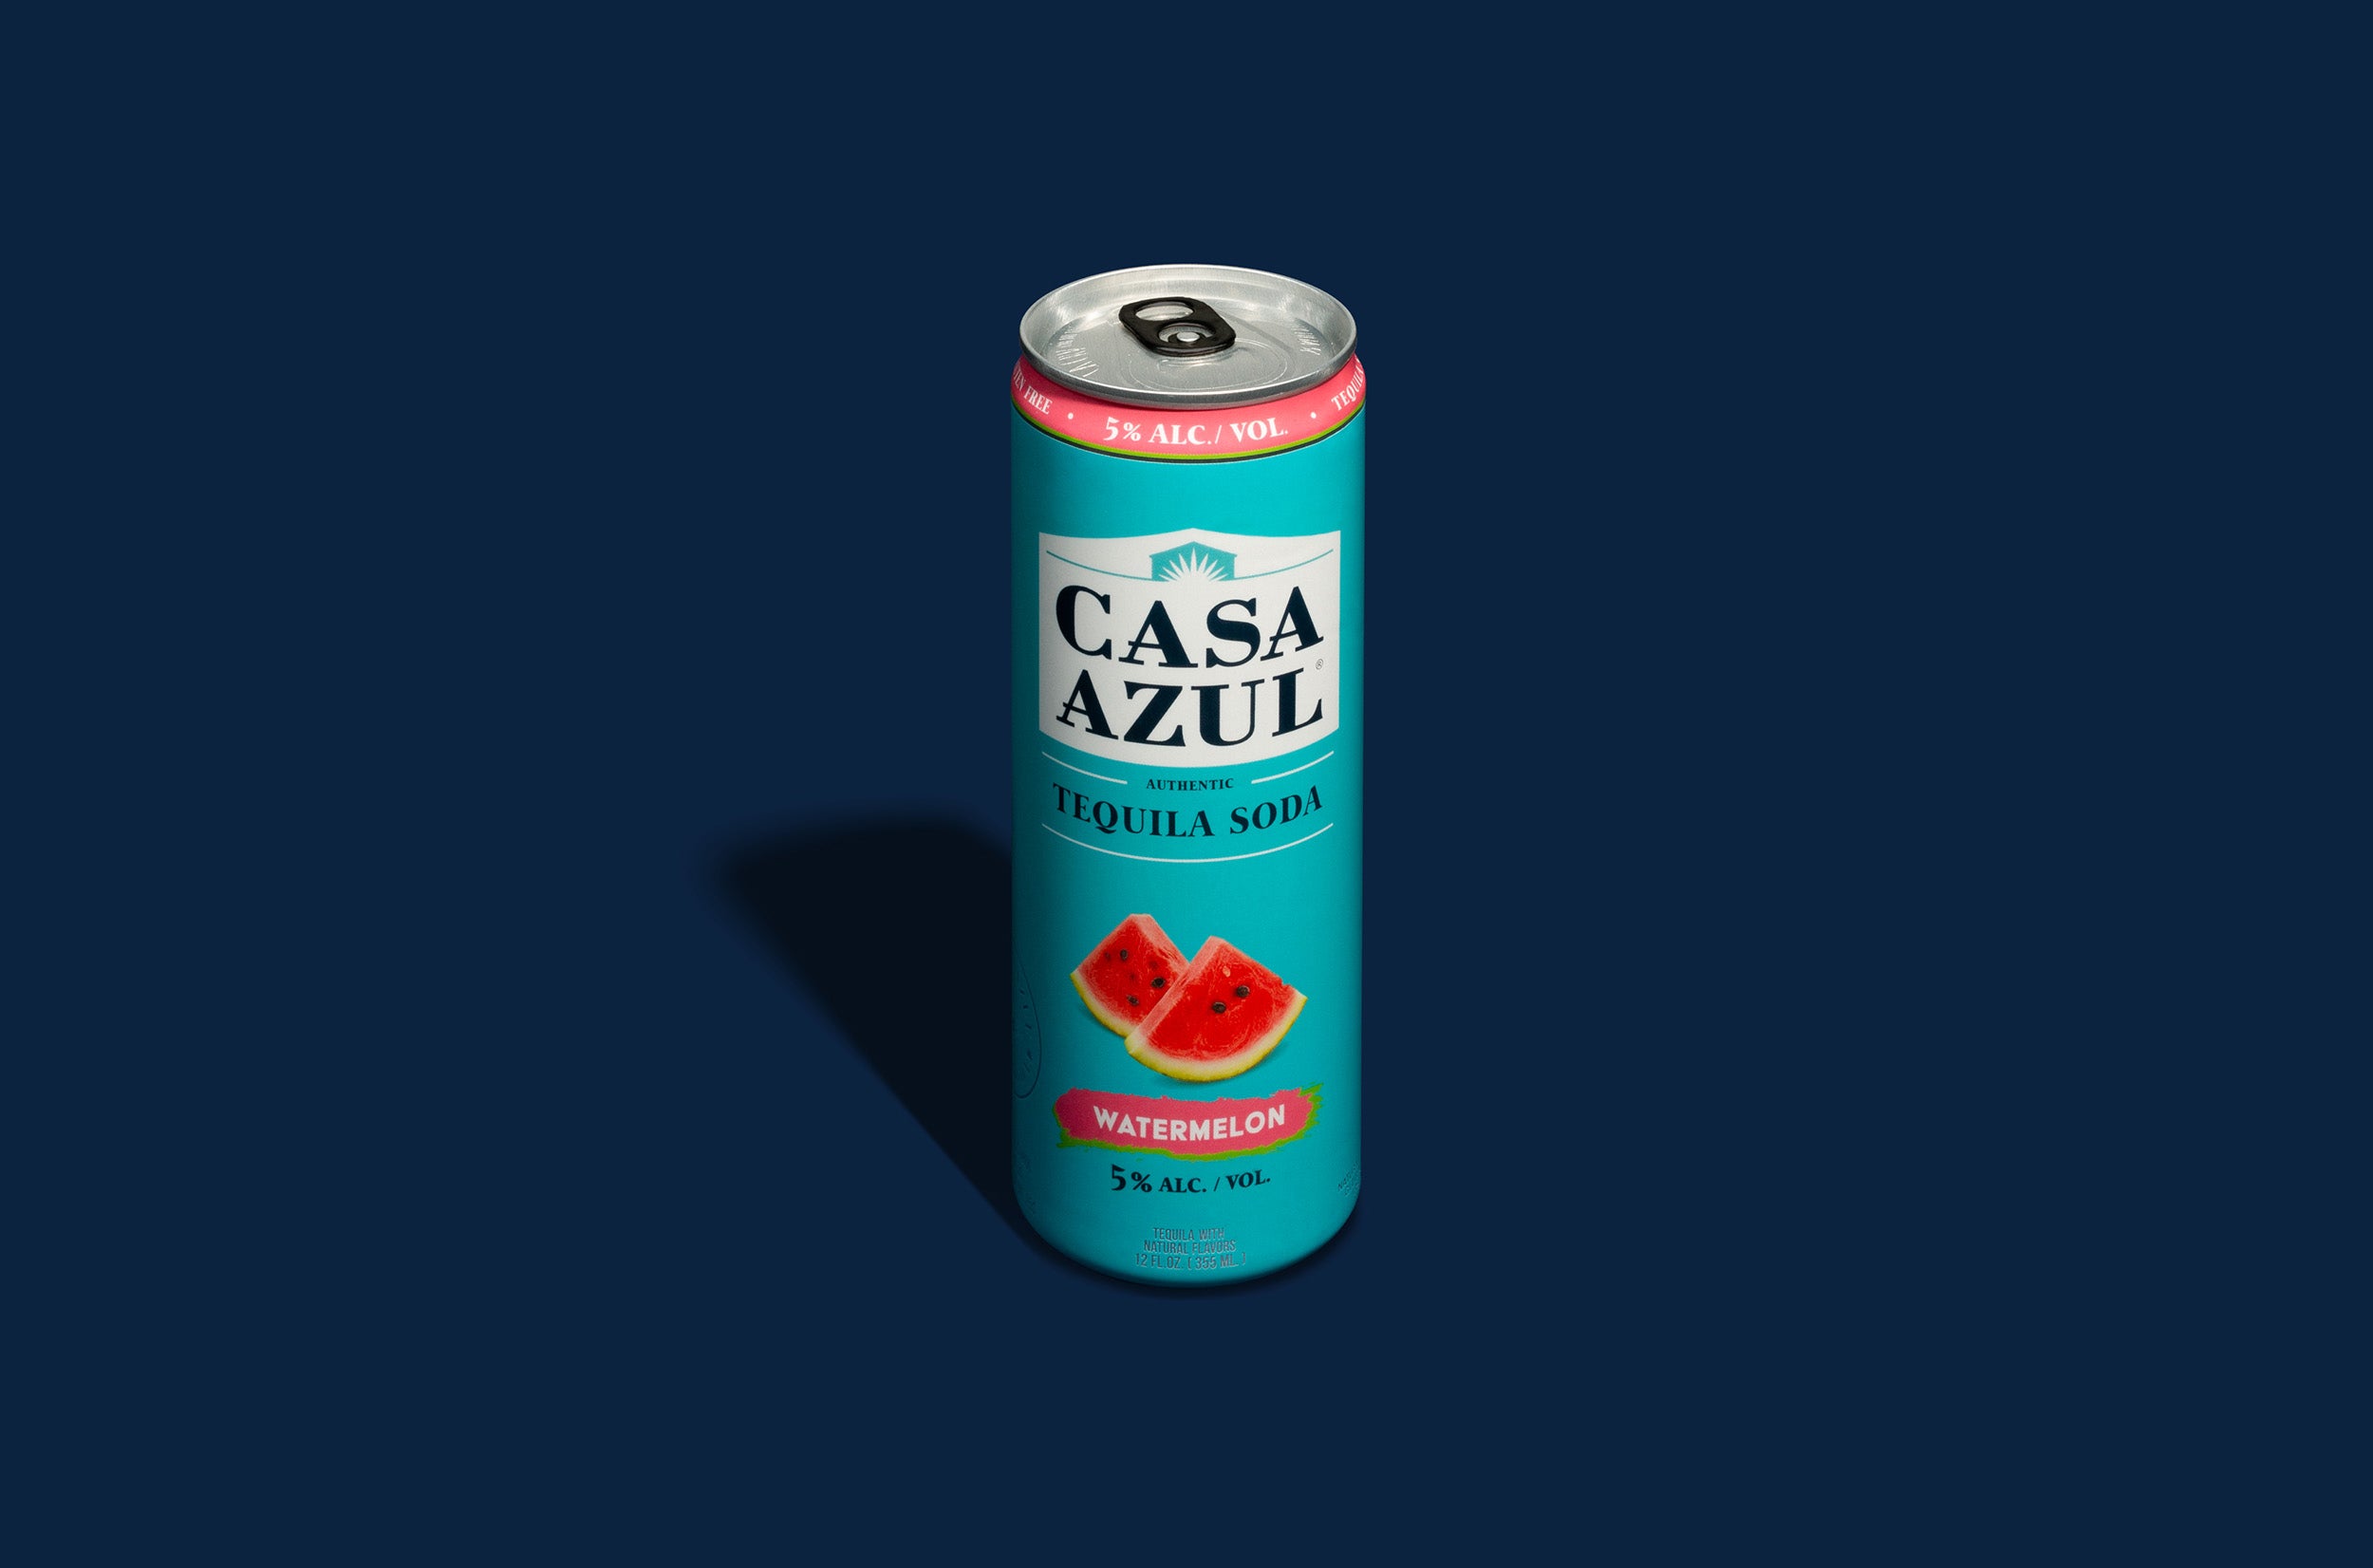 Casa Azul watermelon tequila soda can. 5% alcohol per volume